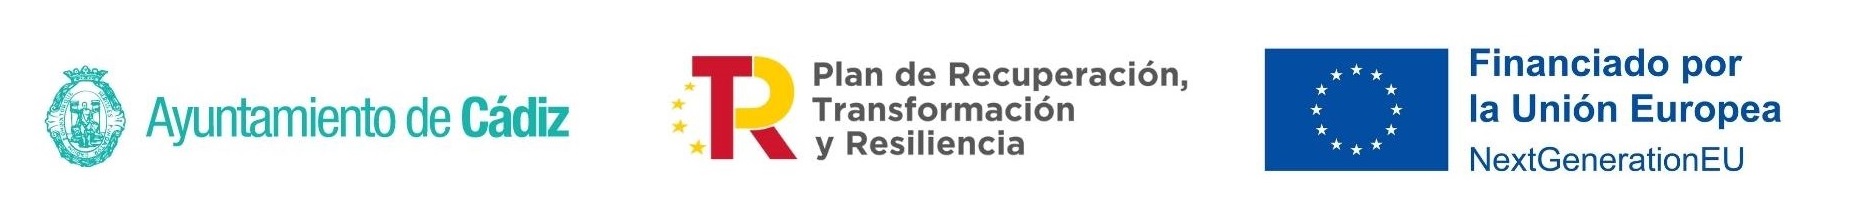 Logotipos fondos Next Generation, Ayuntamiento de Cádiz y Plan Recuperación,Transformación y Resilencia